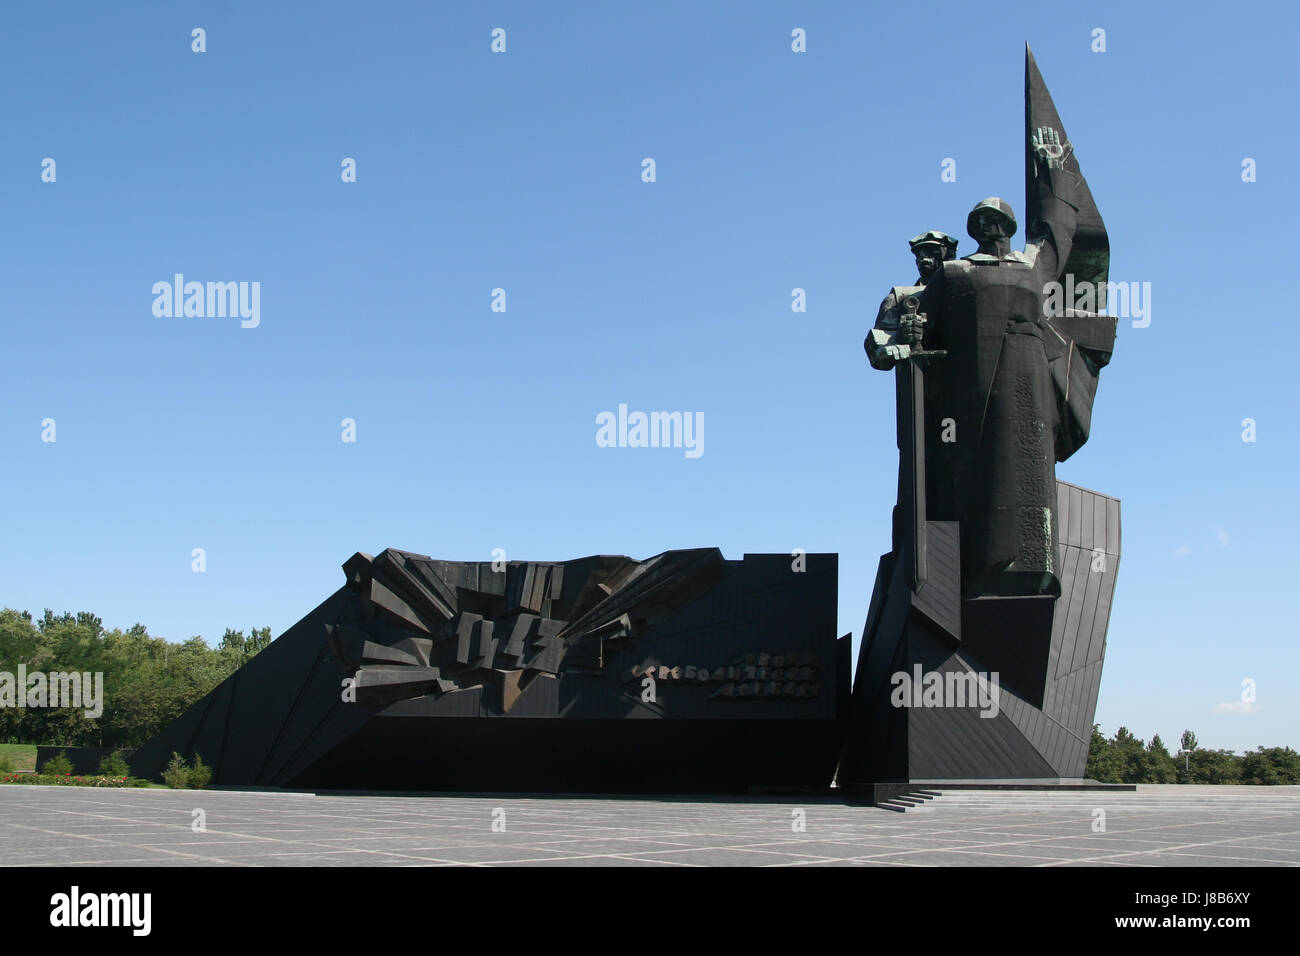 Il monumento alla liberazione di donbass è situato nelle immediate vicinanze dello stadio di donetsk Foto Stock